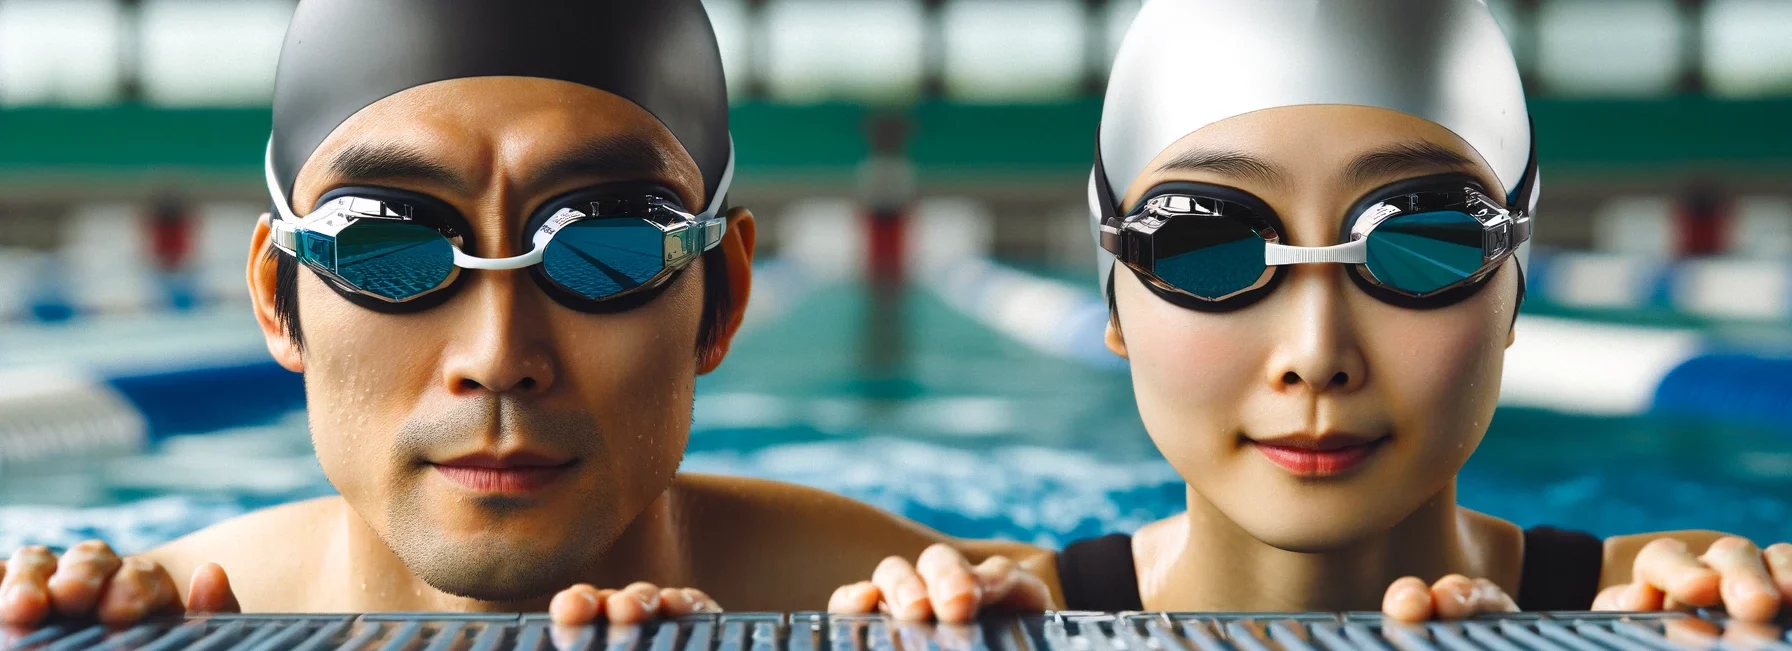 Foto eines ostasiatischen Mannes und einer kaukasischen Frau, die Hightech-Schwimmbrillen tragen und bereit sind, in ein Wettkampfschwimmbecken zu springen.